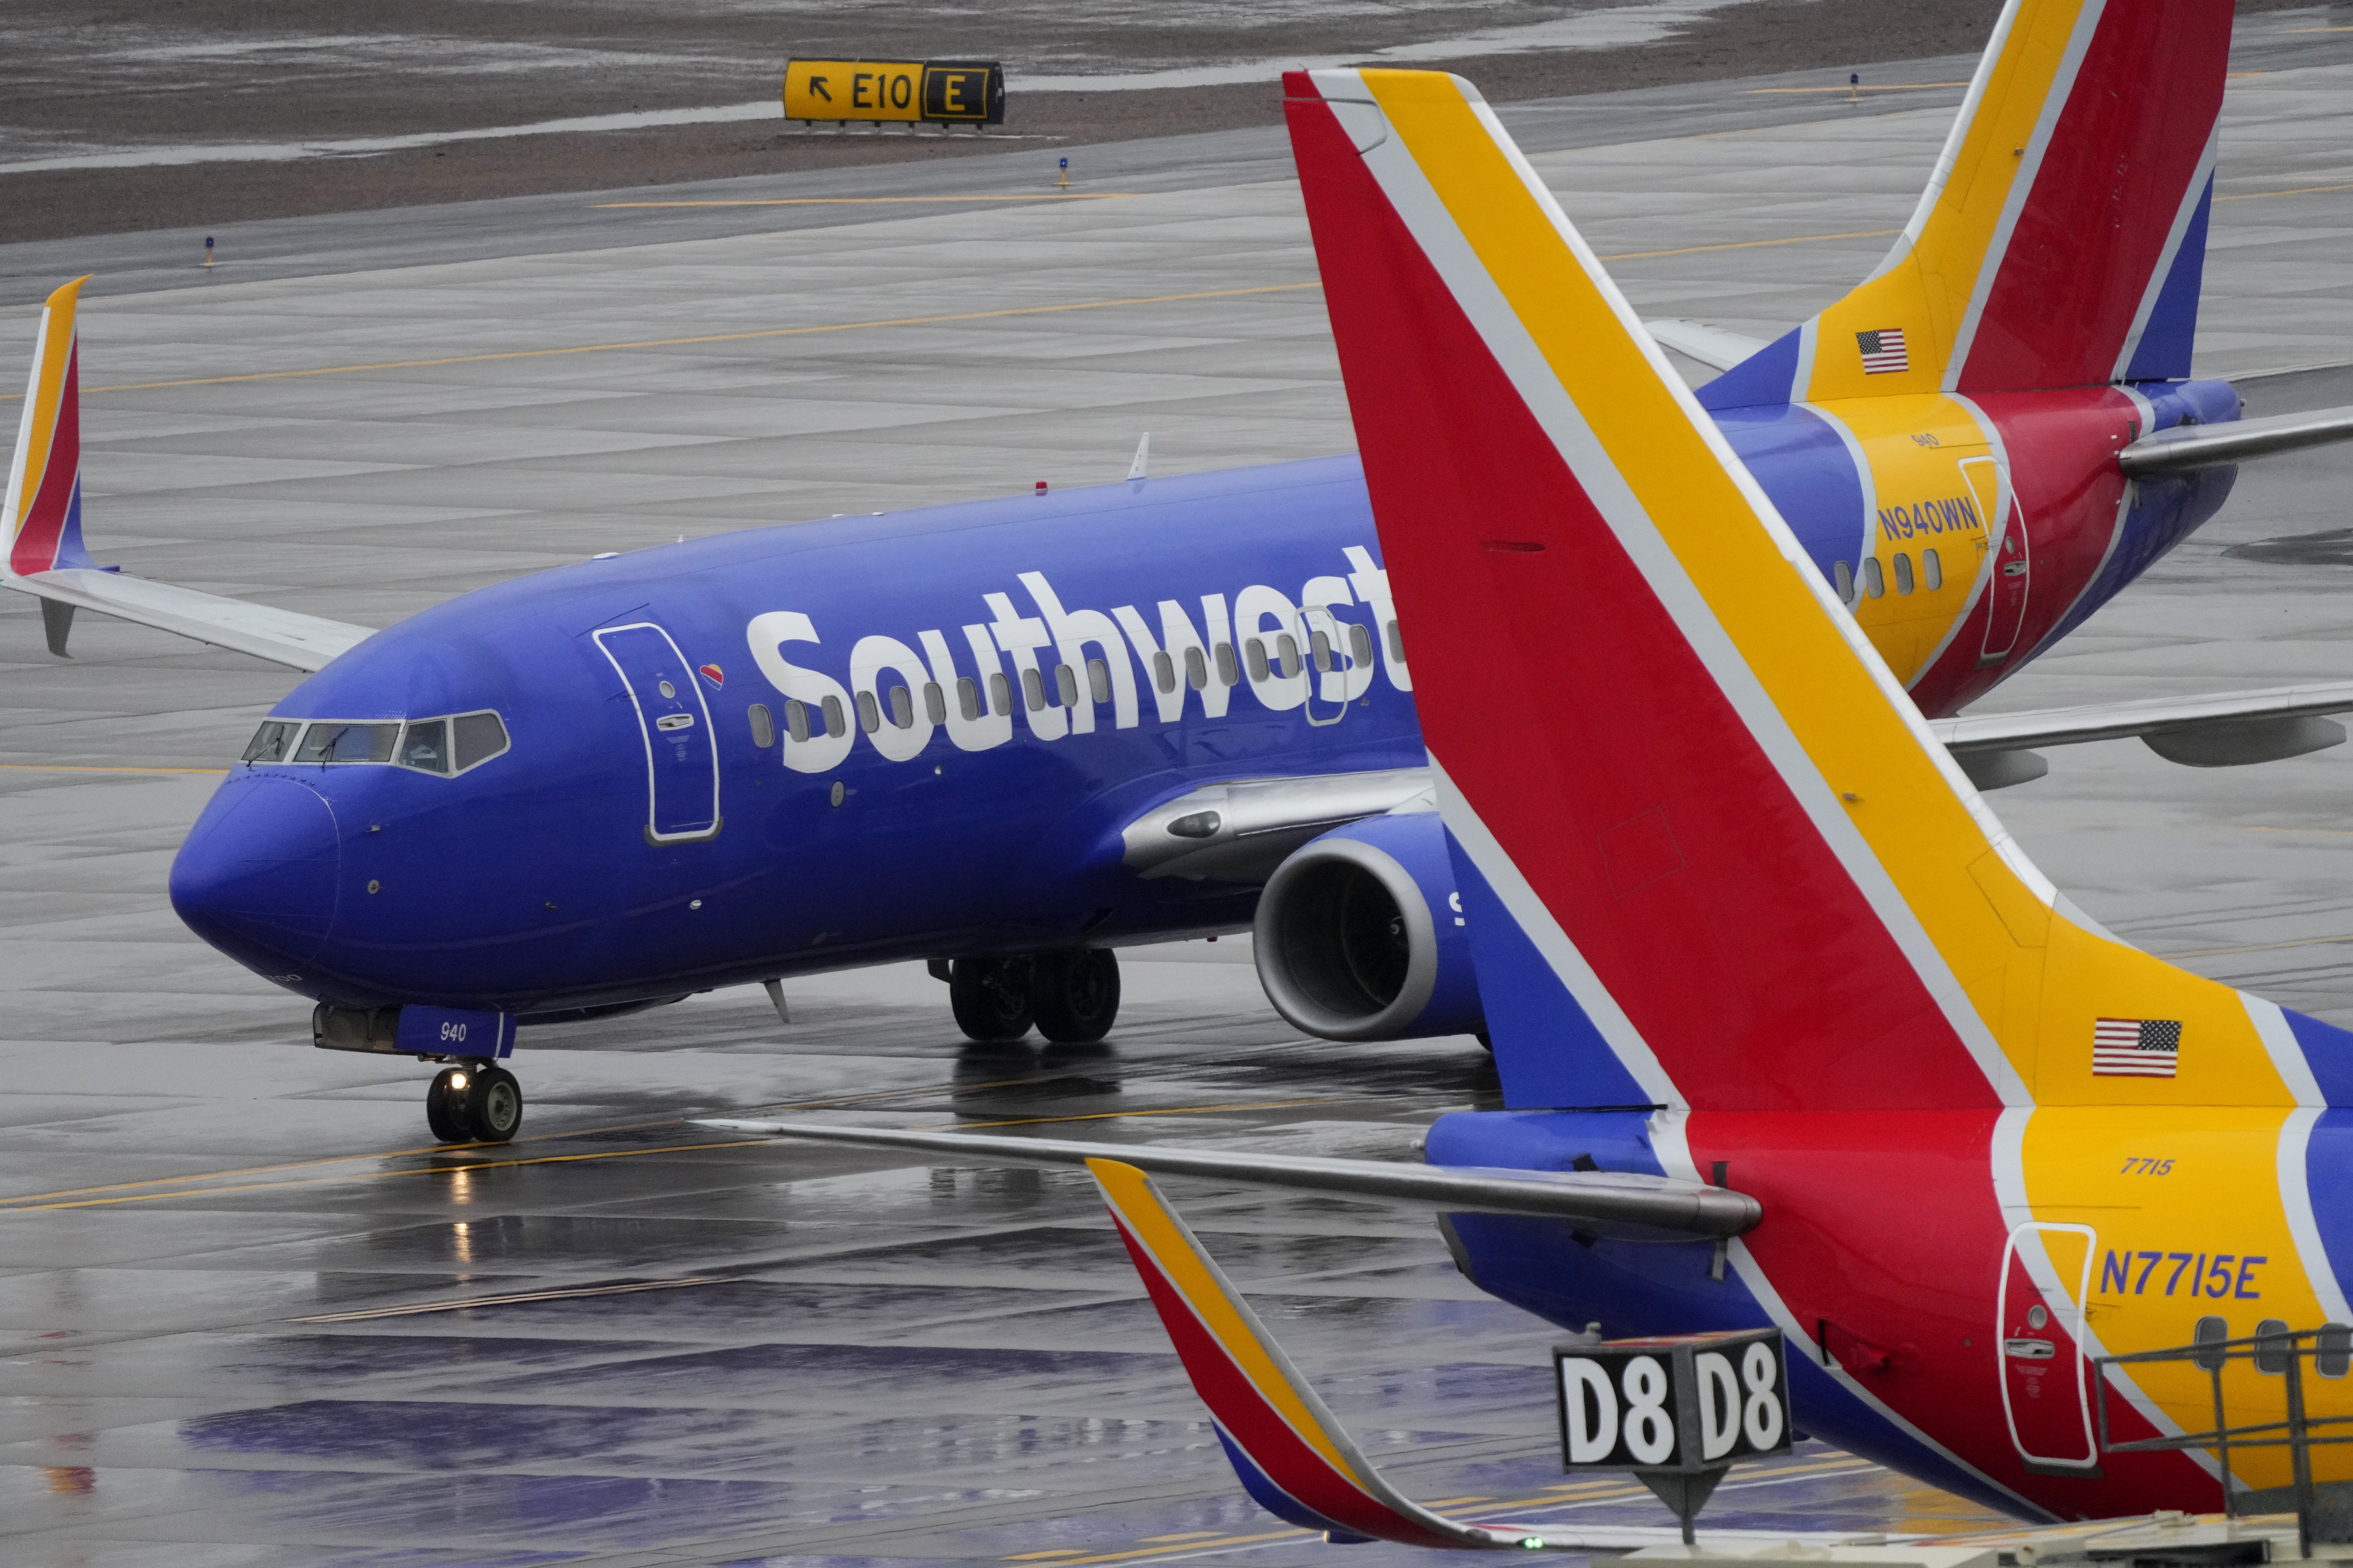 西南航空一架航班3日从美国路易斯安那州纽奥良飞往佛州奥兰多，途中遭遇乱流紧急降落佛州坦帕机场。图非事发航班。美联社